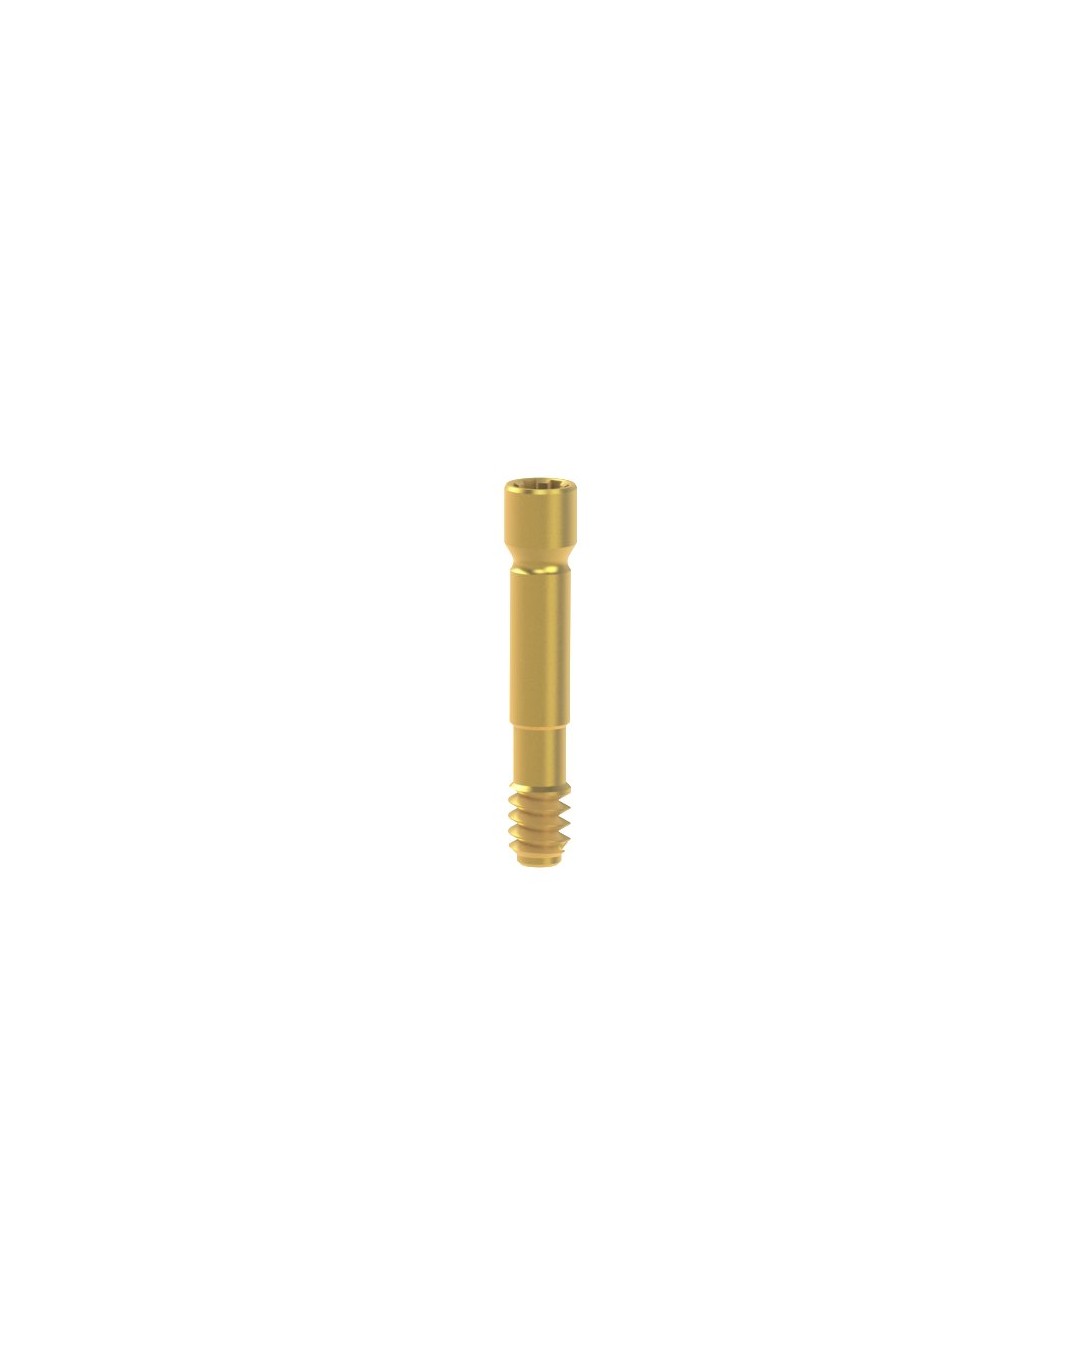 Titanium Screw compatible with Neodent® Gran Morse®